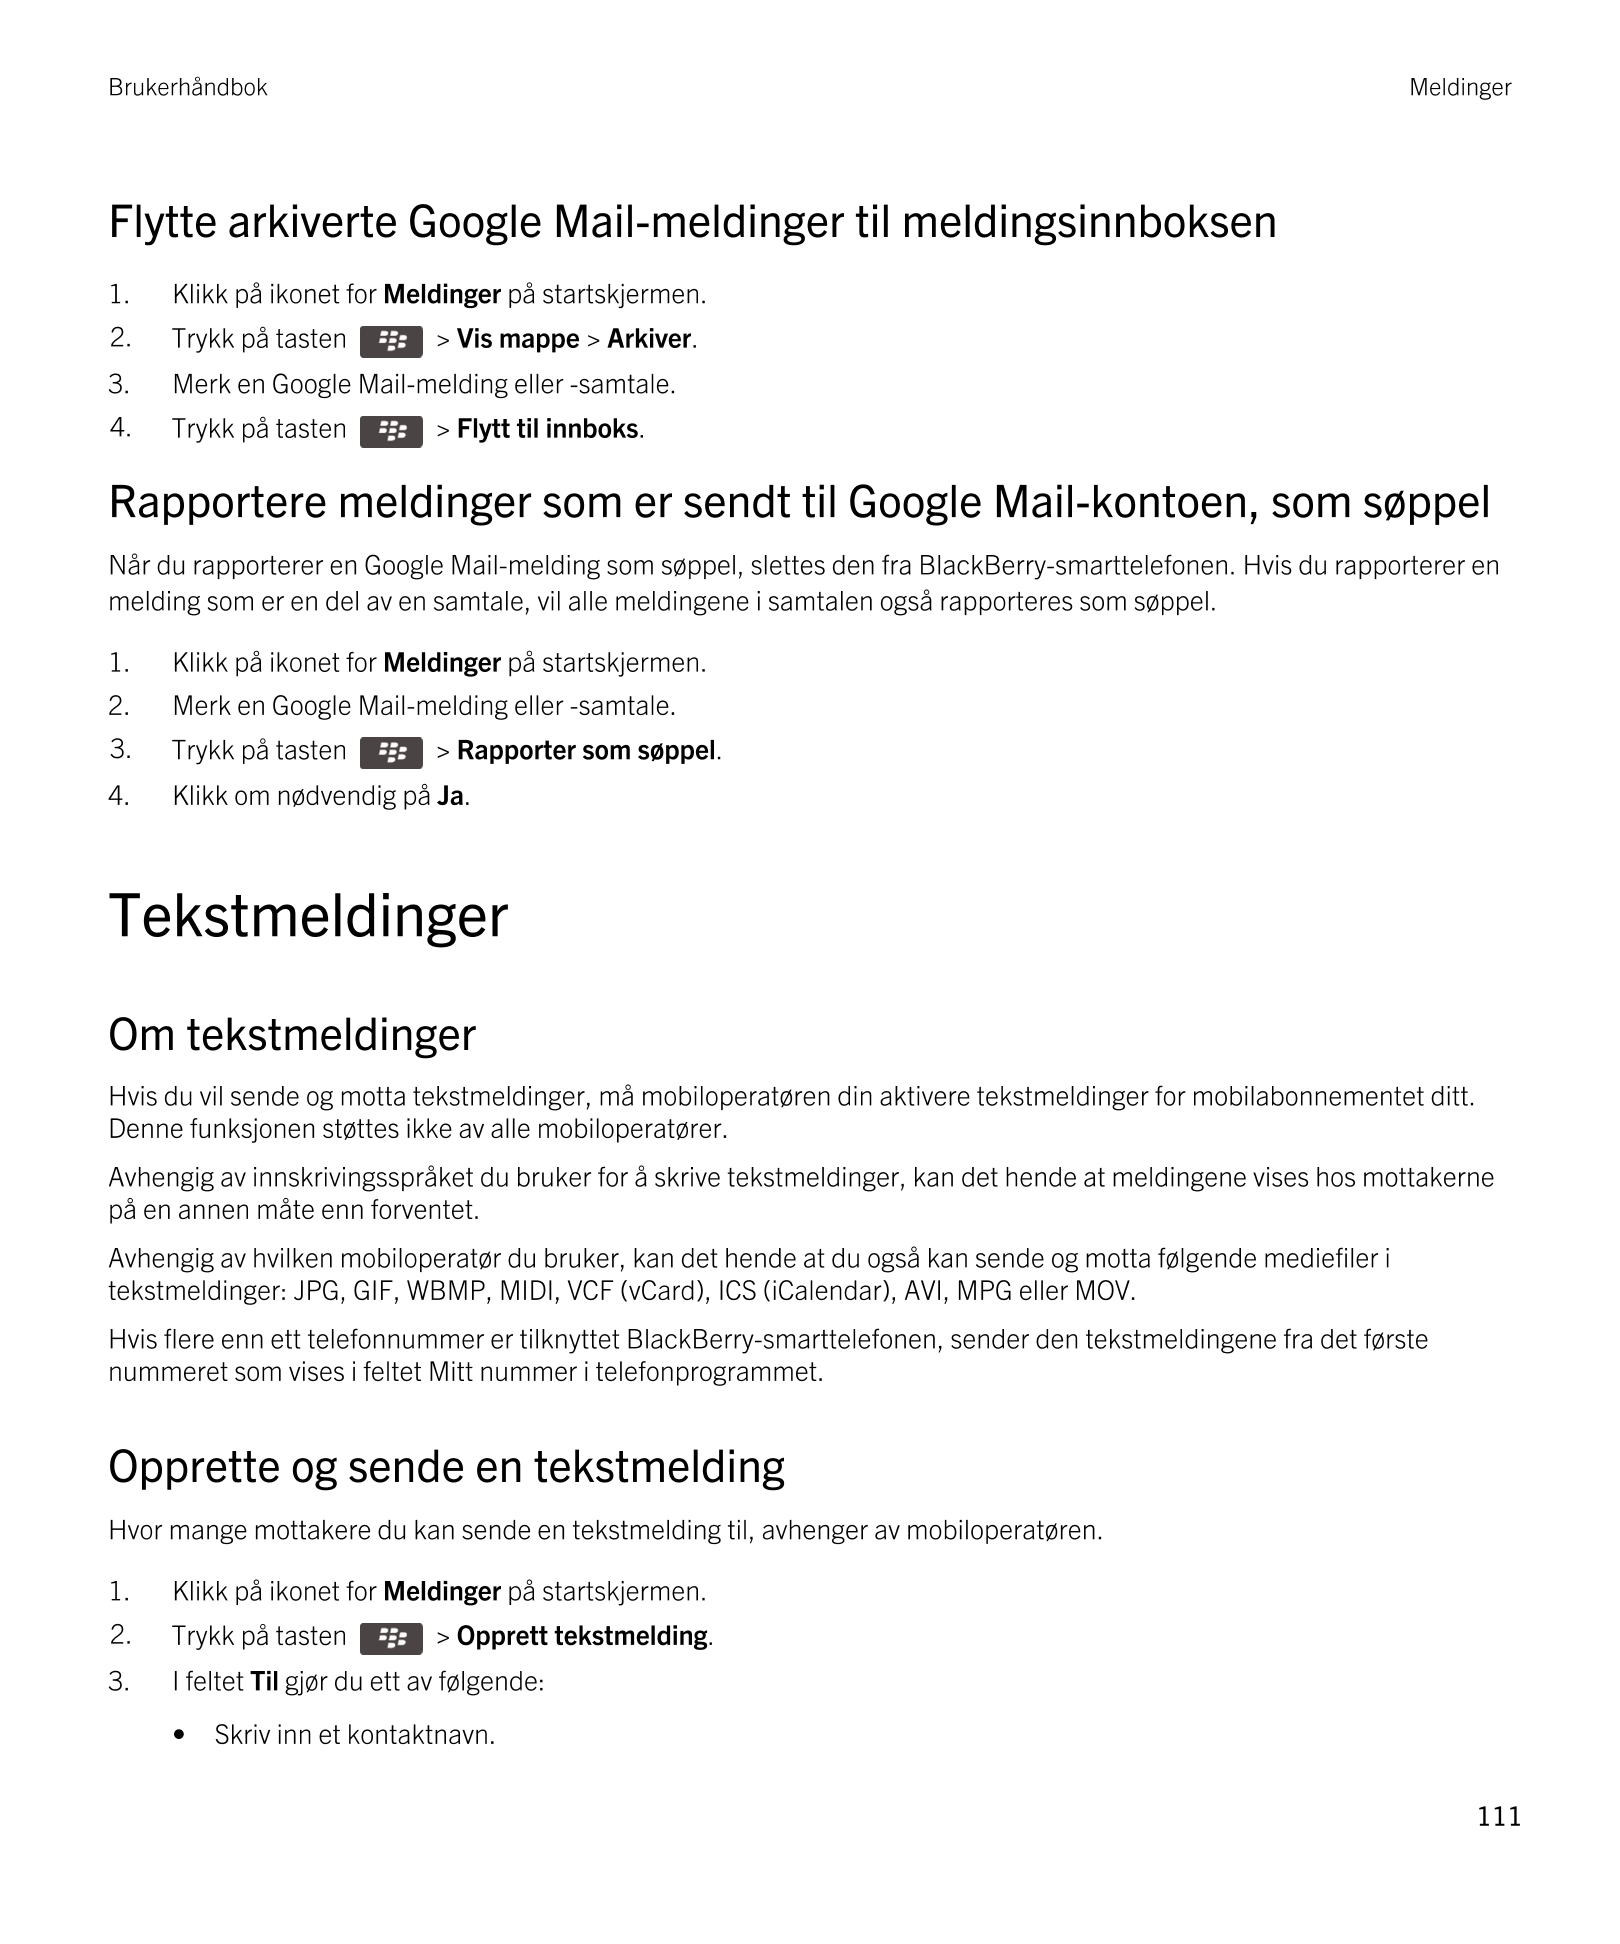 Brukerhåndbok Meldinger
Flytte arkiverte  Google Mail-meldinger til meldingsinnboksen
1. Klikk på ikonet for  Meldinger på start